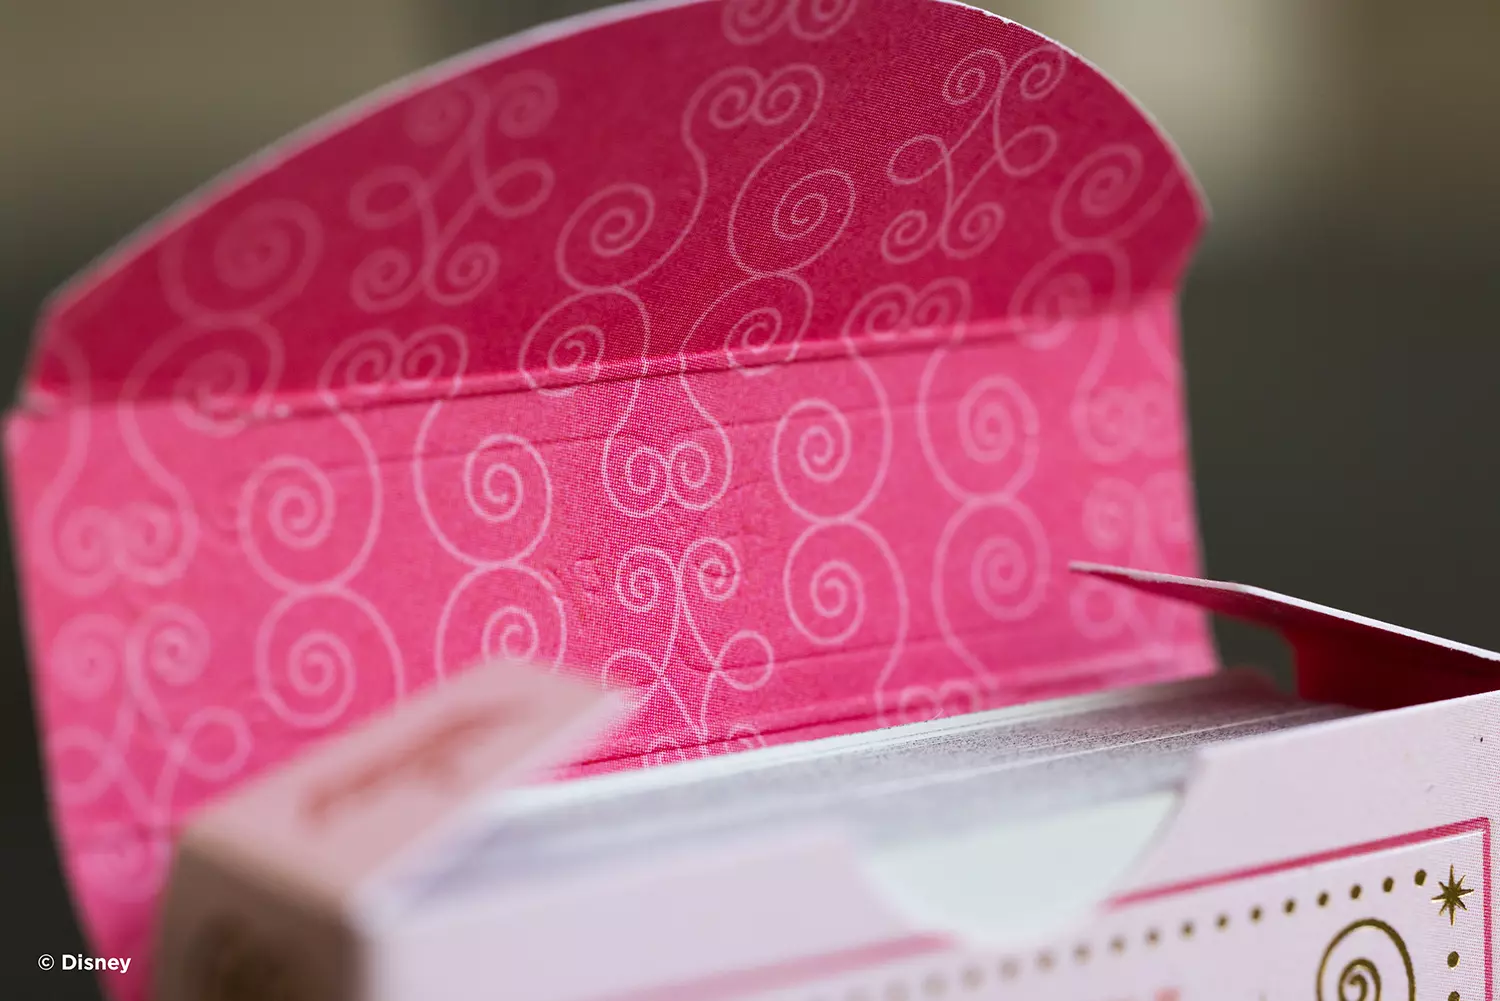 Eine Bicycle Ultimate Bicycle Disney Princess pink rosa Kartenschachtel ist im Detail zu sehen.